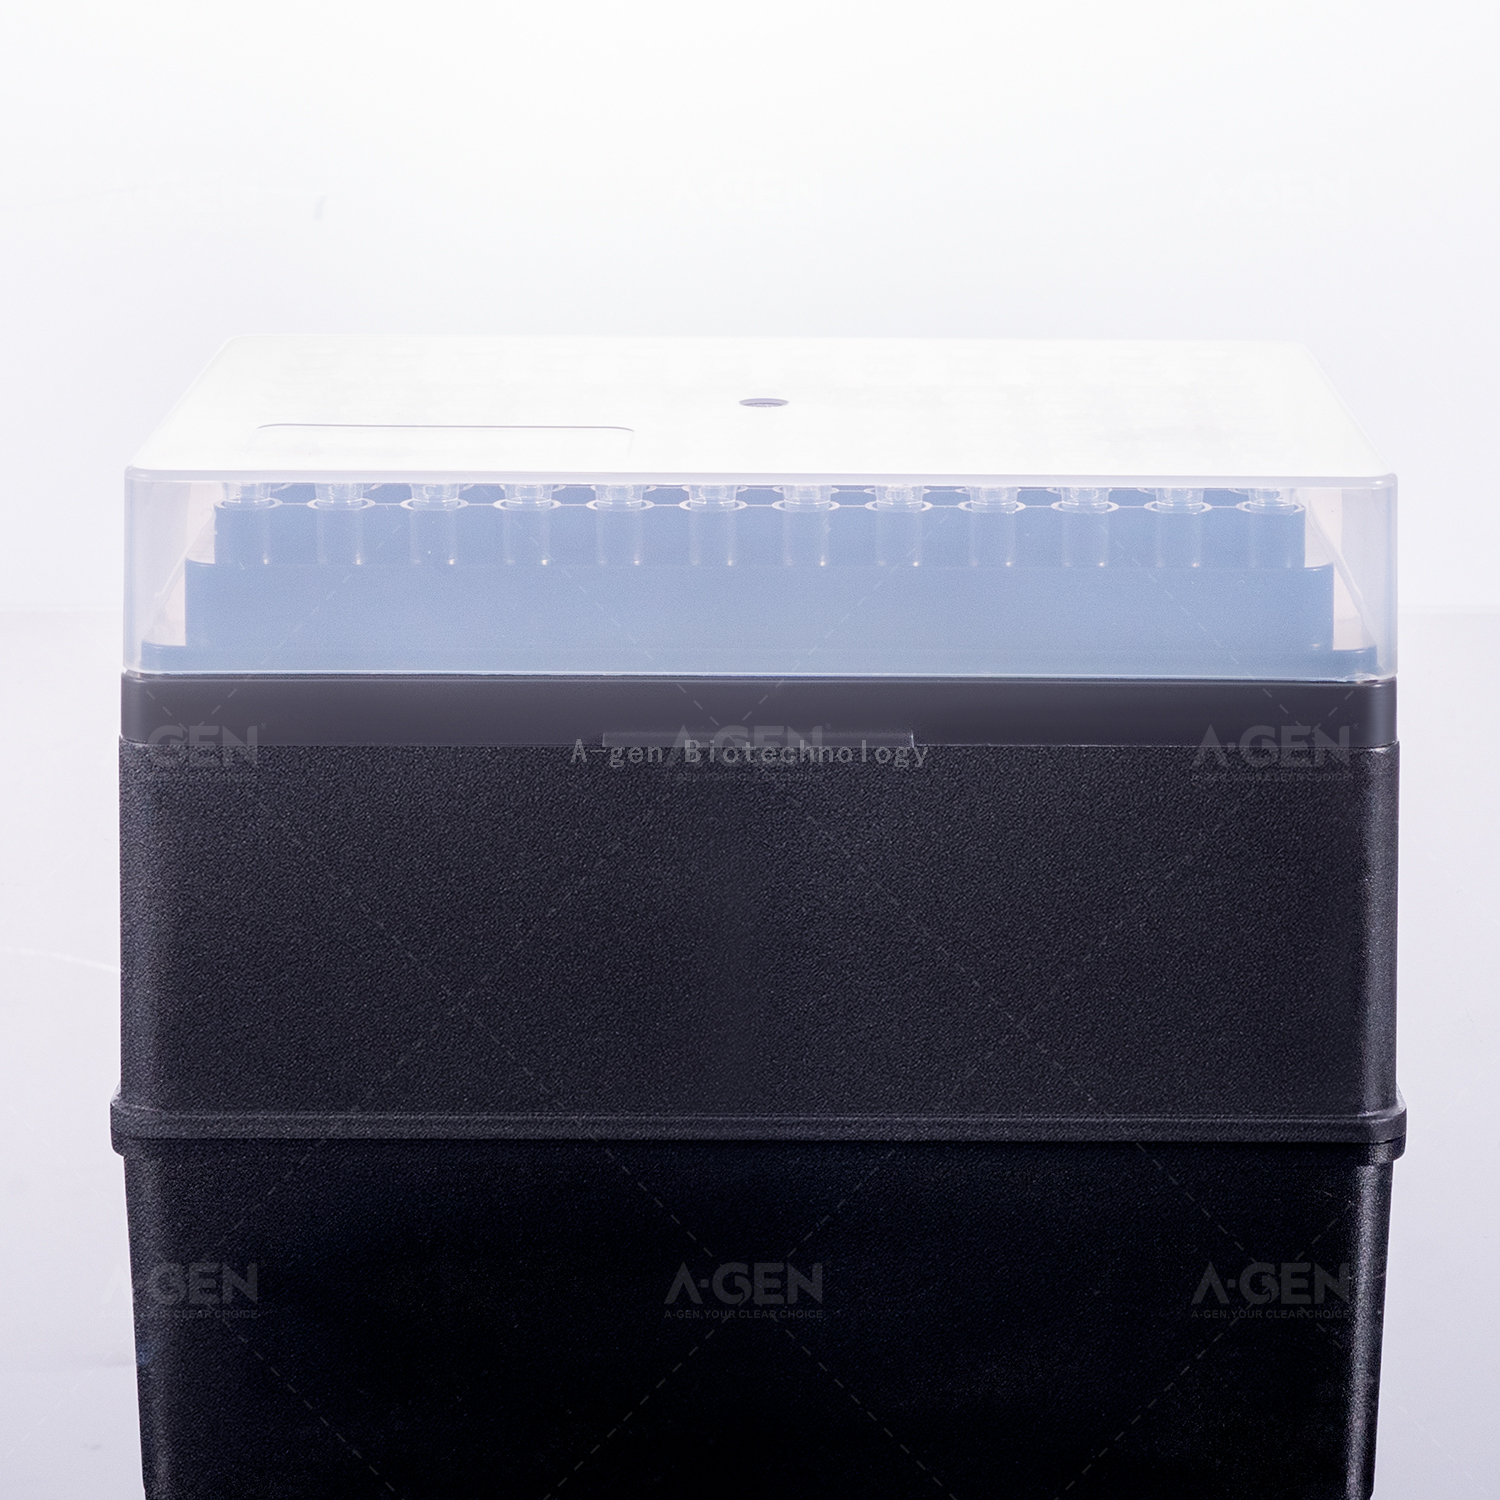 Opentrons 移液器吸头透明 20μL PP 移液器吸头（架装，无菌），用于不带过滤器的液体转移 OPT-20-RSL 低保留或无保留